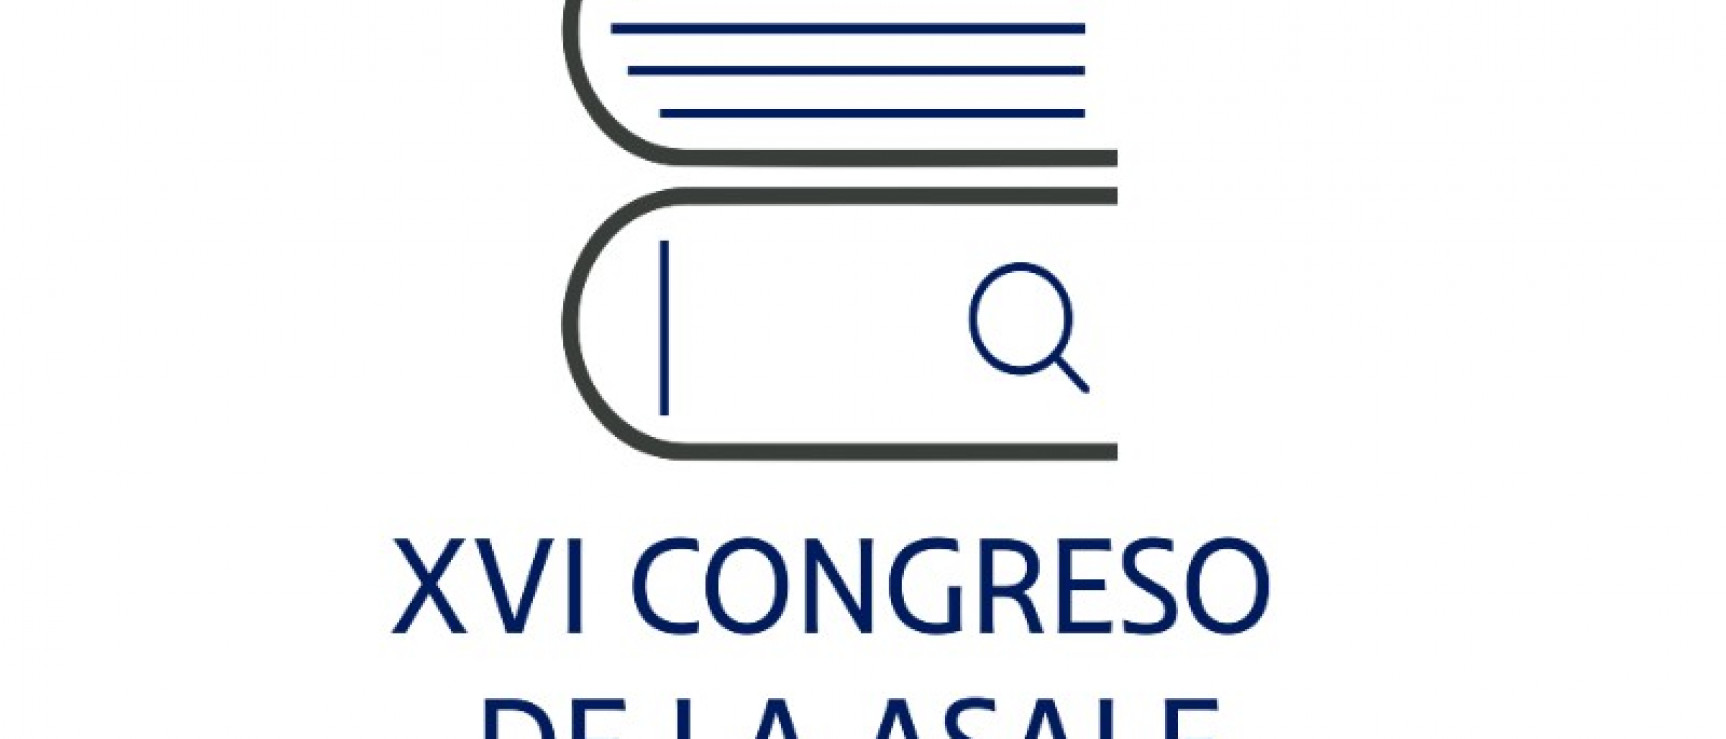 Logo del XVI Congreso de la Asociación de Academias de la Lengua Española.